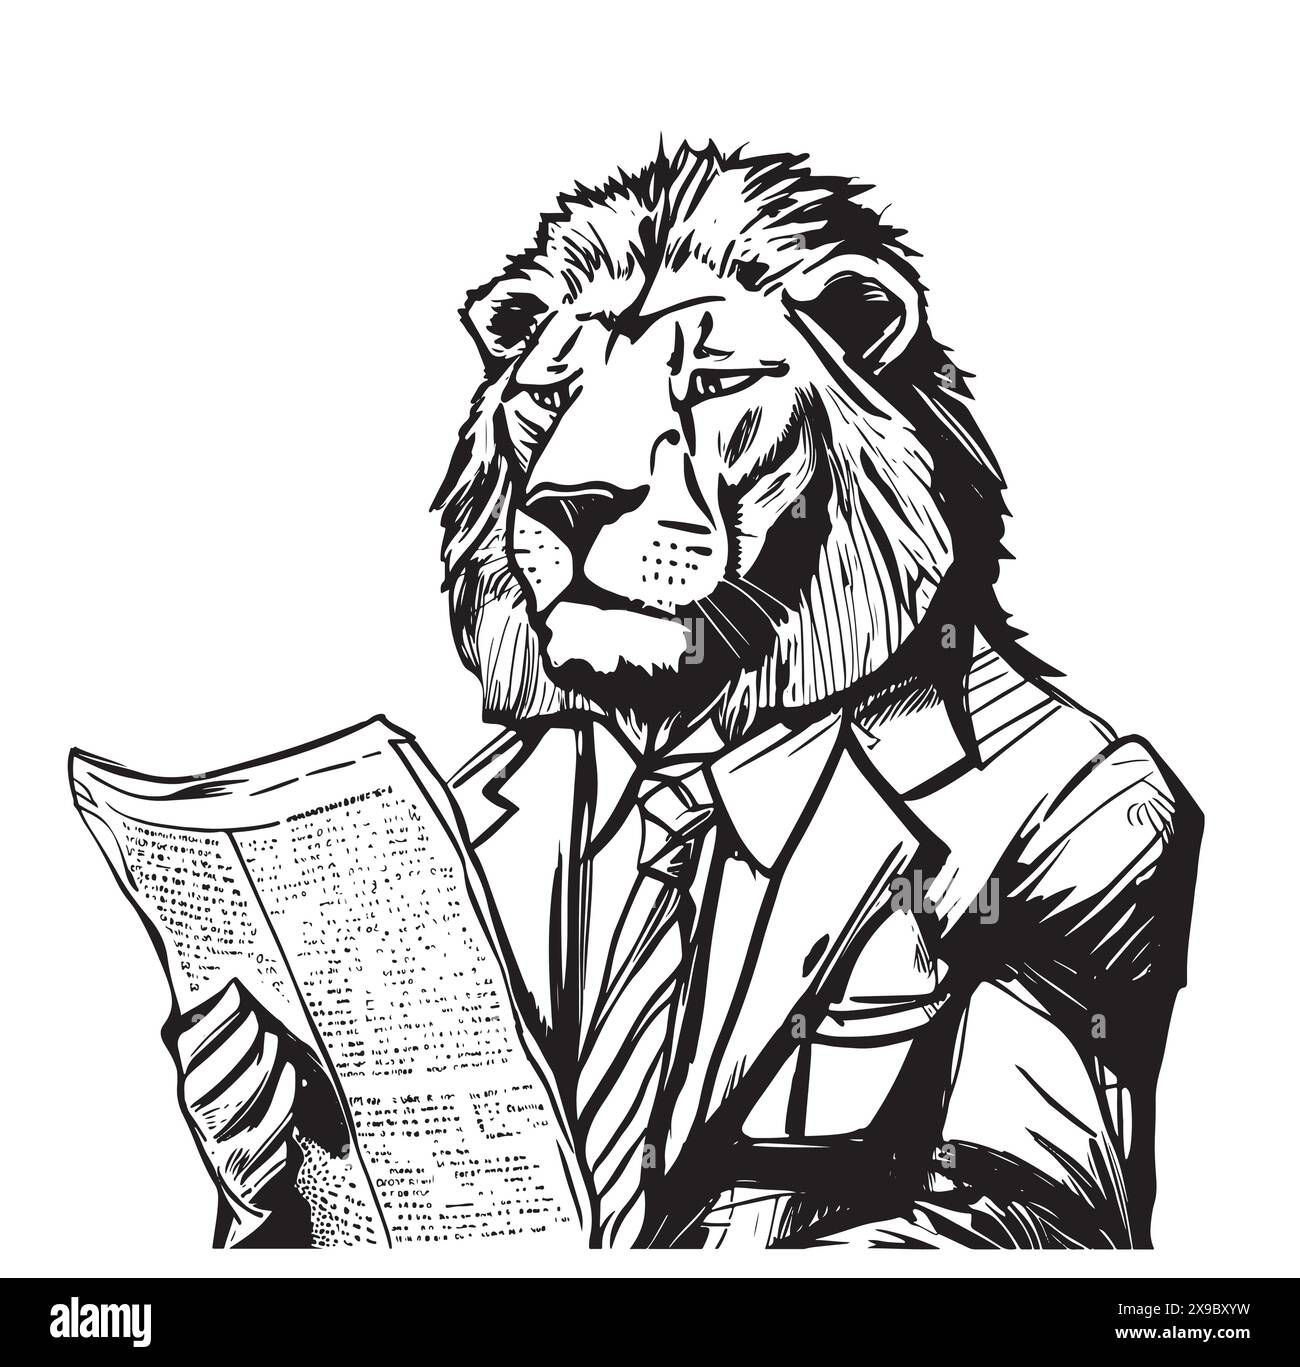 Löwe im Anzug liest Zeitung Sketch Illustration Stock Vektor